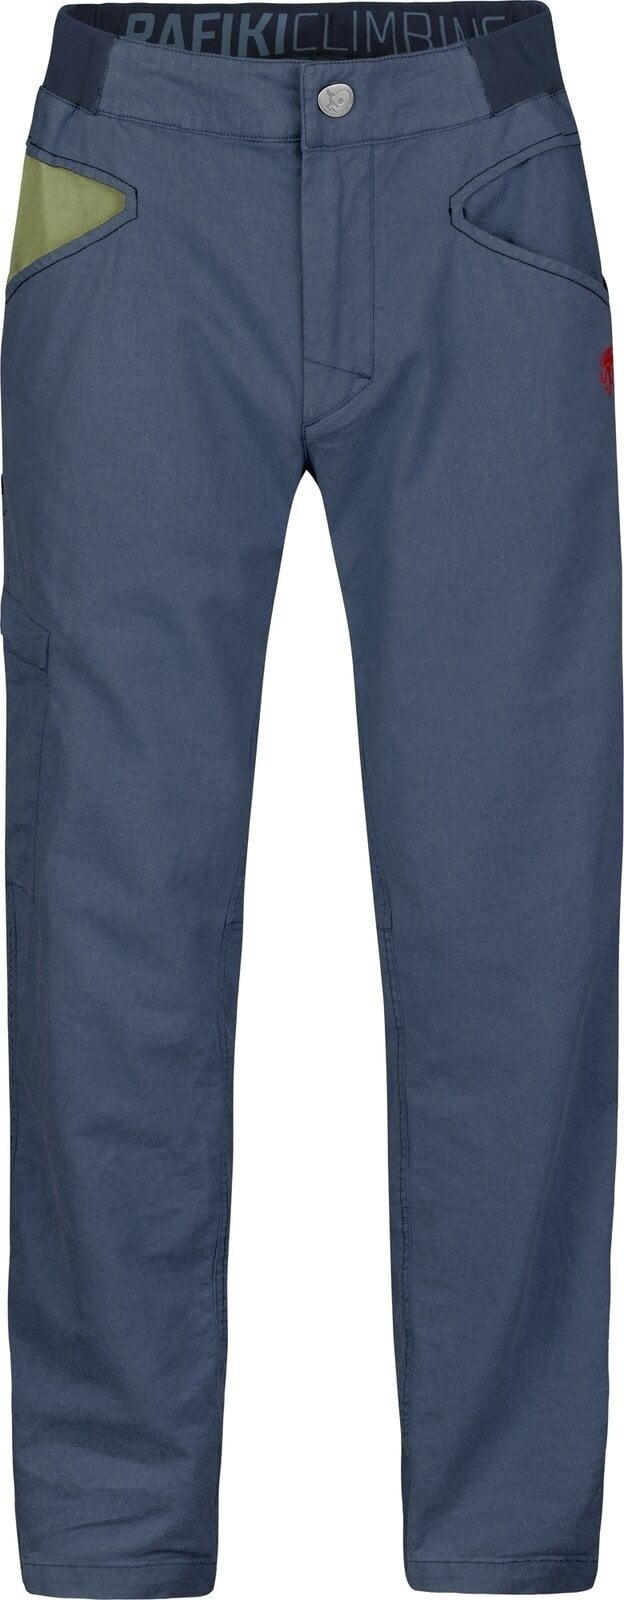 Spodnie outdoorowe Rafiki Grip Man Pants India Ink 2XL Spodnie outdoorowe